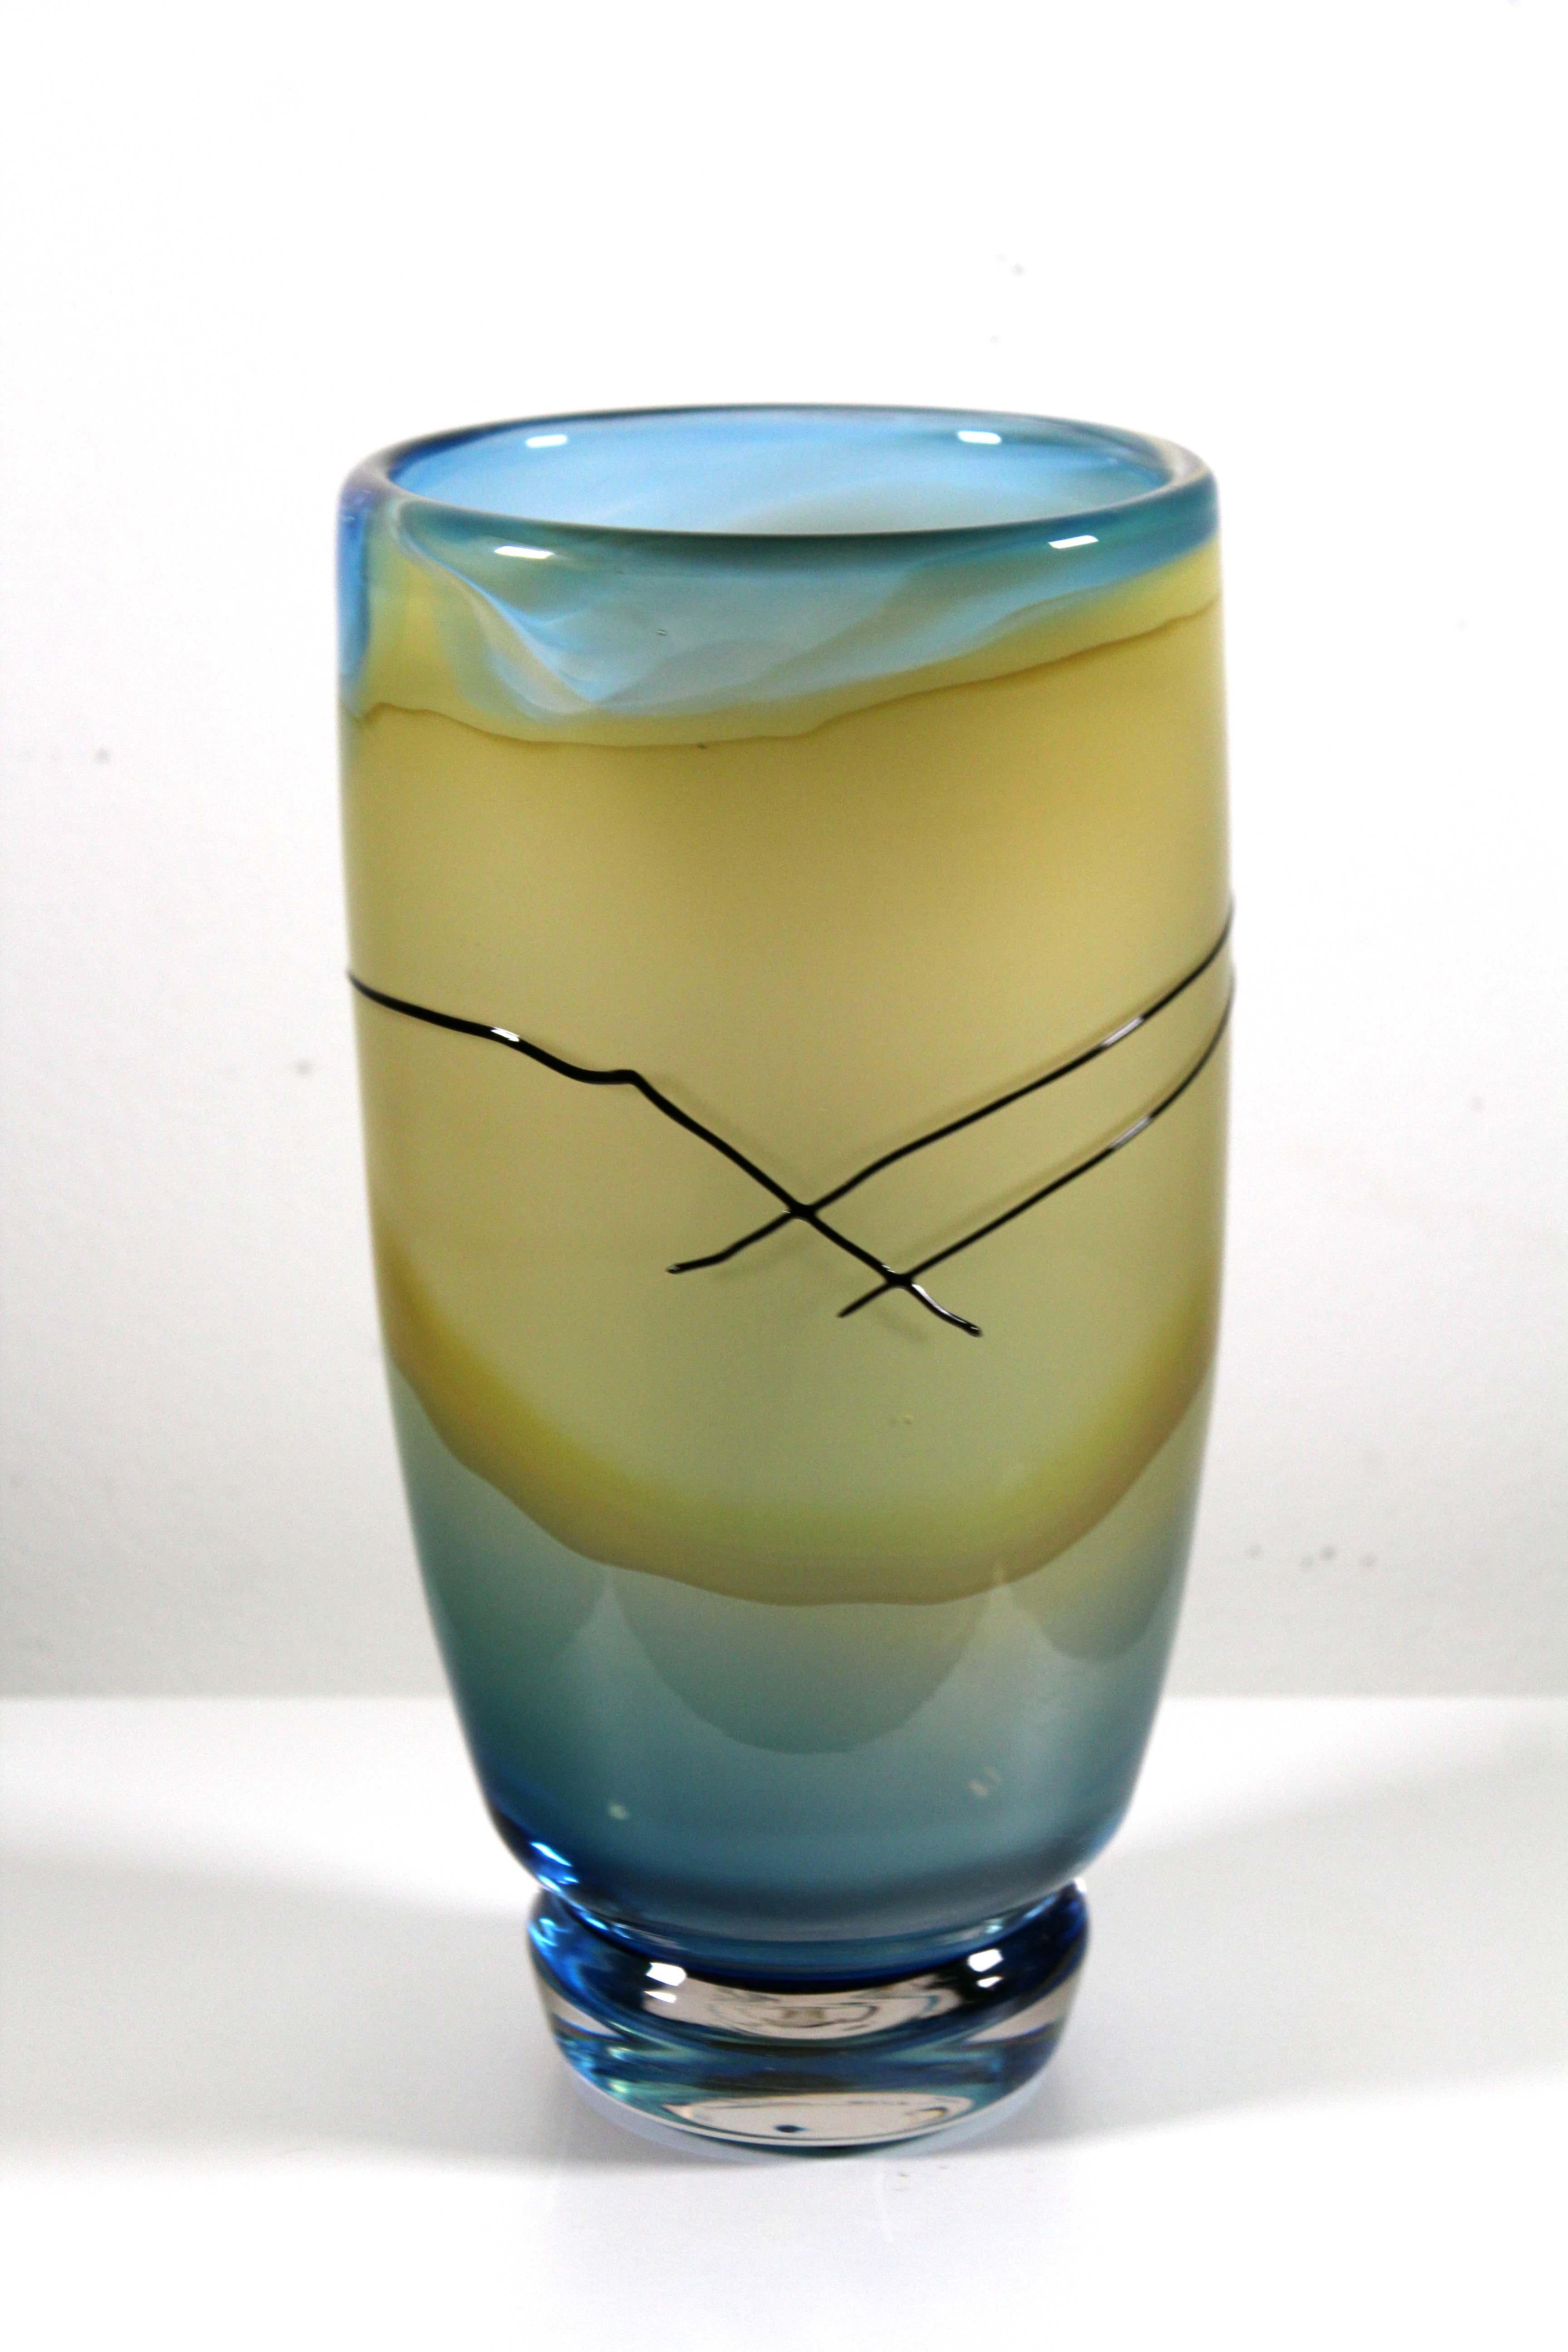 Un vase postmoderne en verre soufflé à la bouche par Jack Schmidt. Signature gravée sur le bas et datée de 1986. Le vase présente une palette de couleurs sereines, jaune doré et bleu aqua, et l'artiste a ajouté une ligne noire stylisée et audacieuse